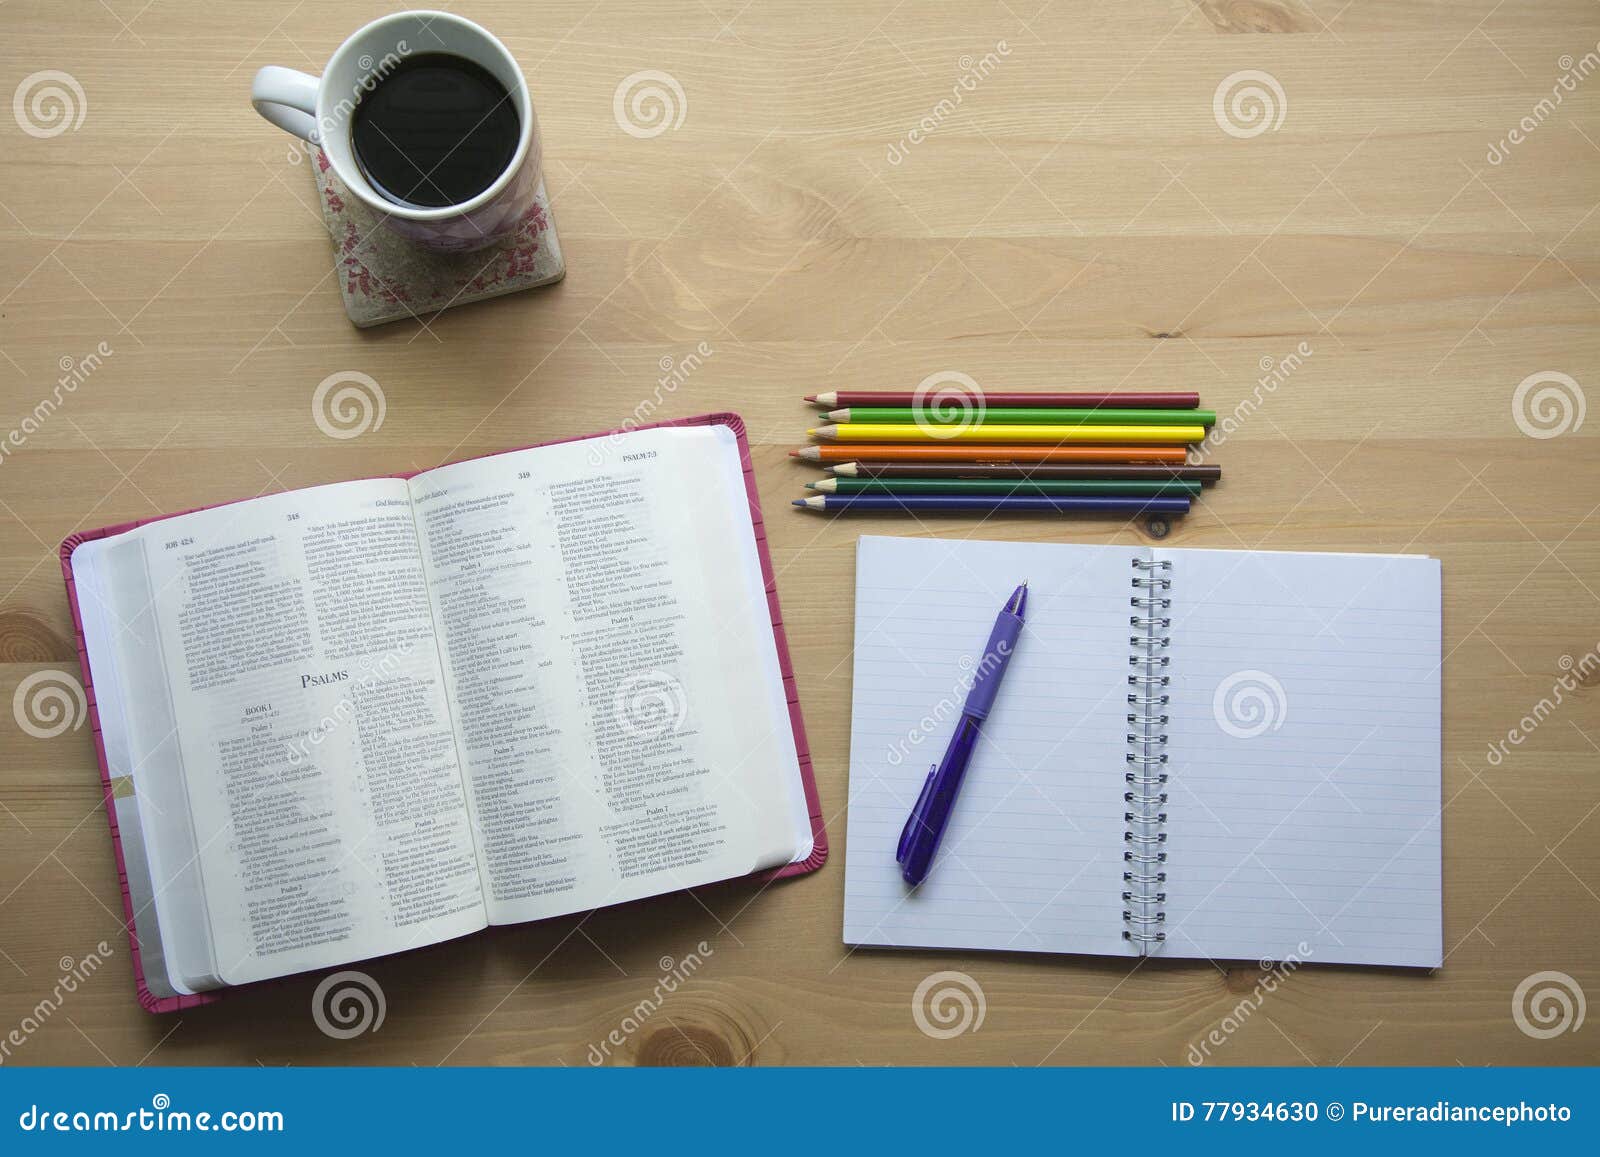 Pen, bible, and coffee mug on a table — Photo — Lightstock